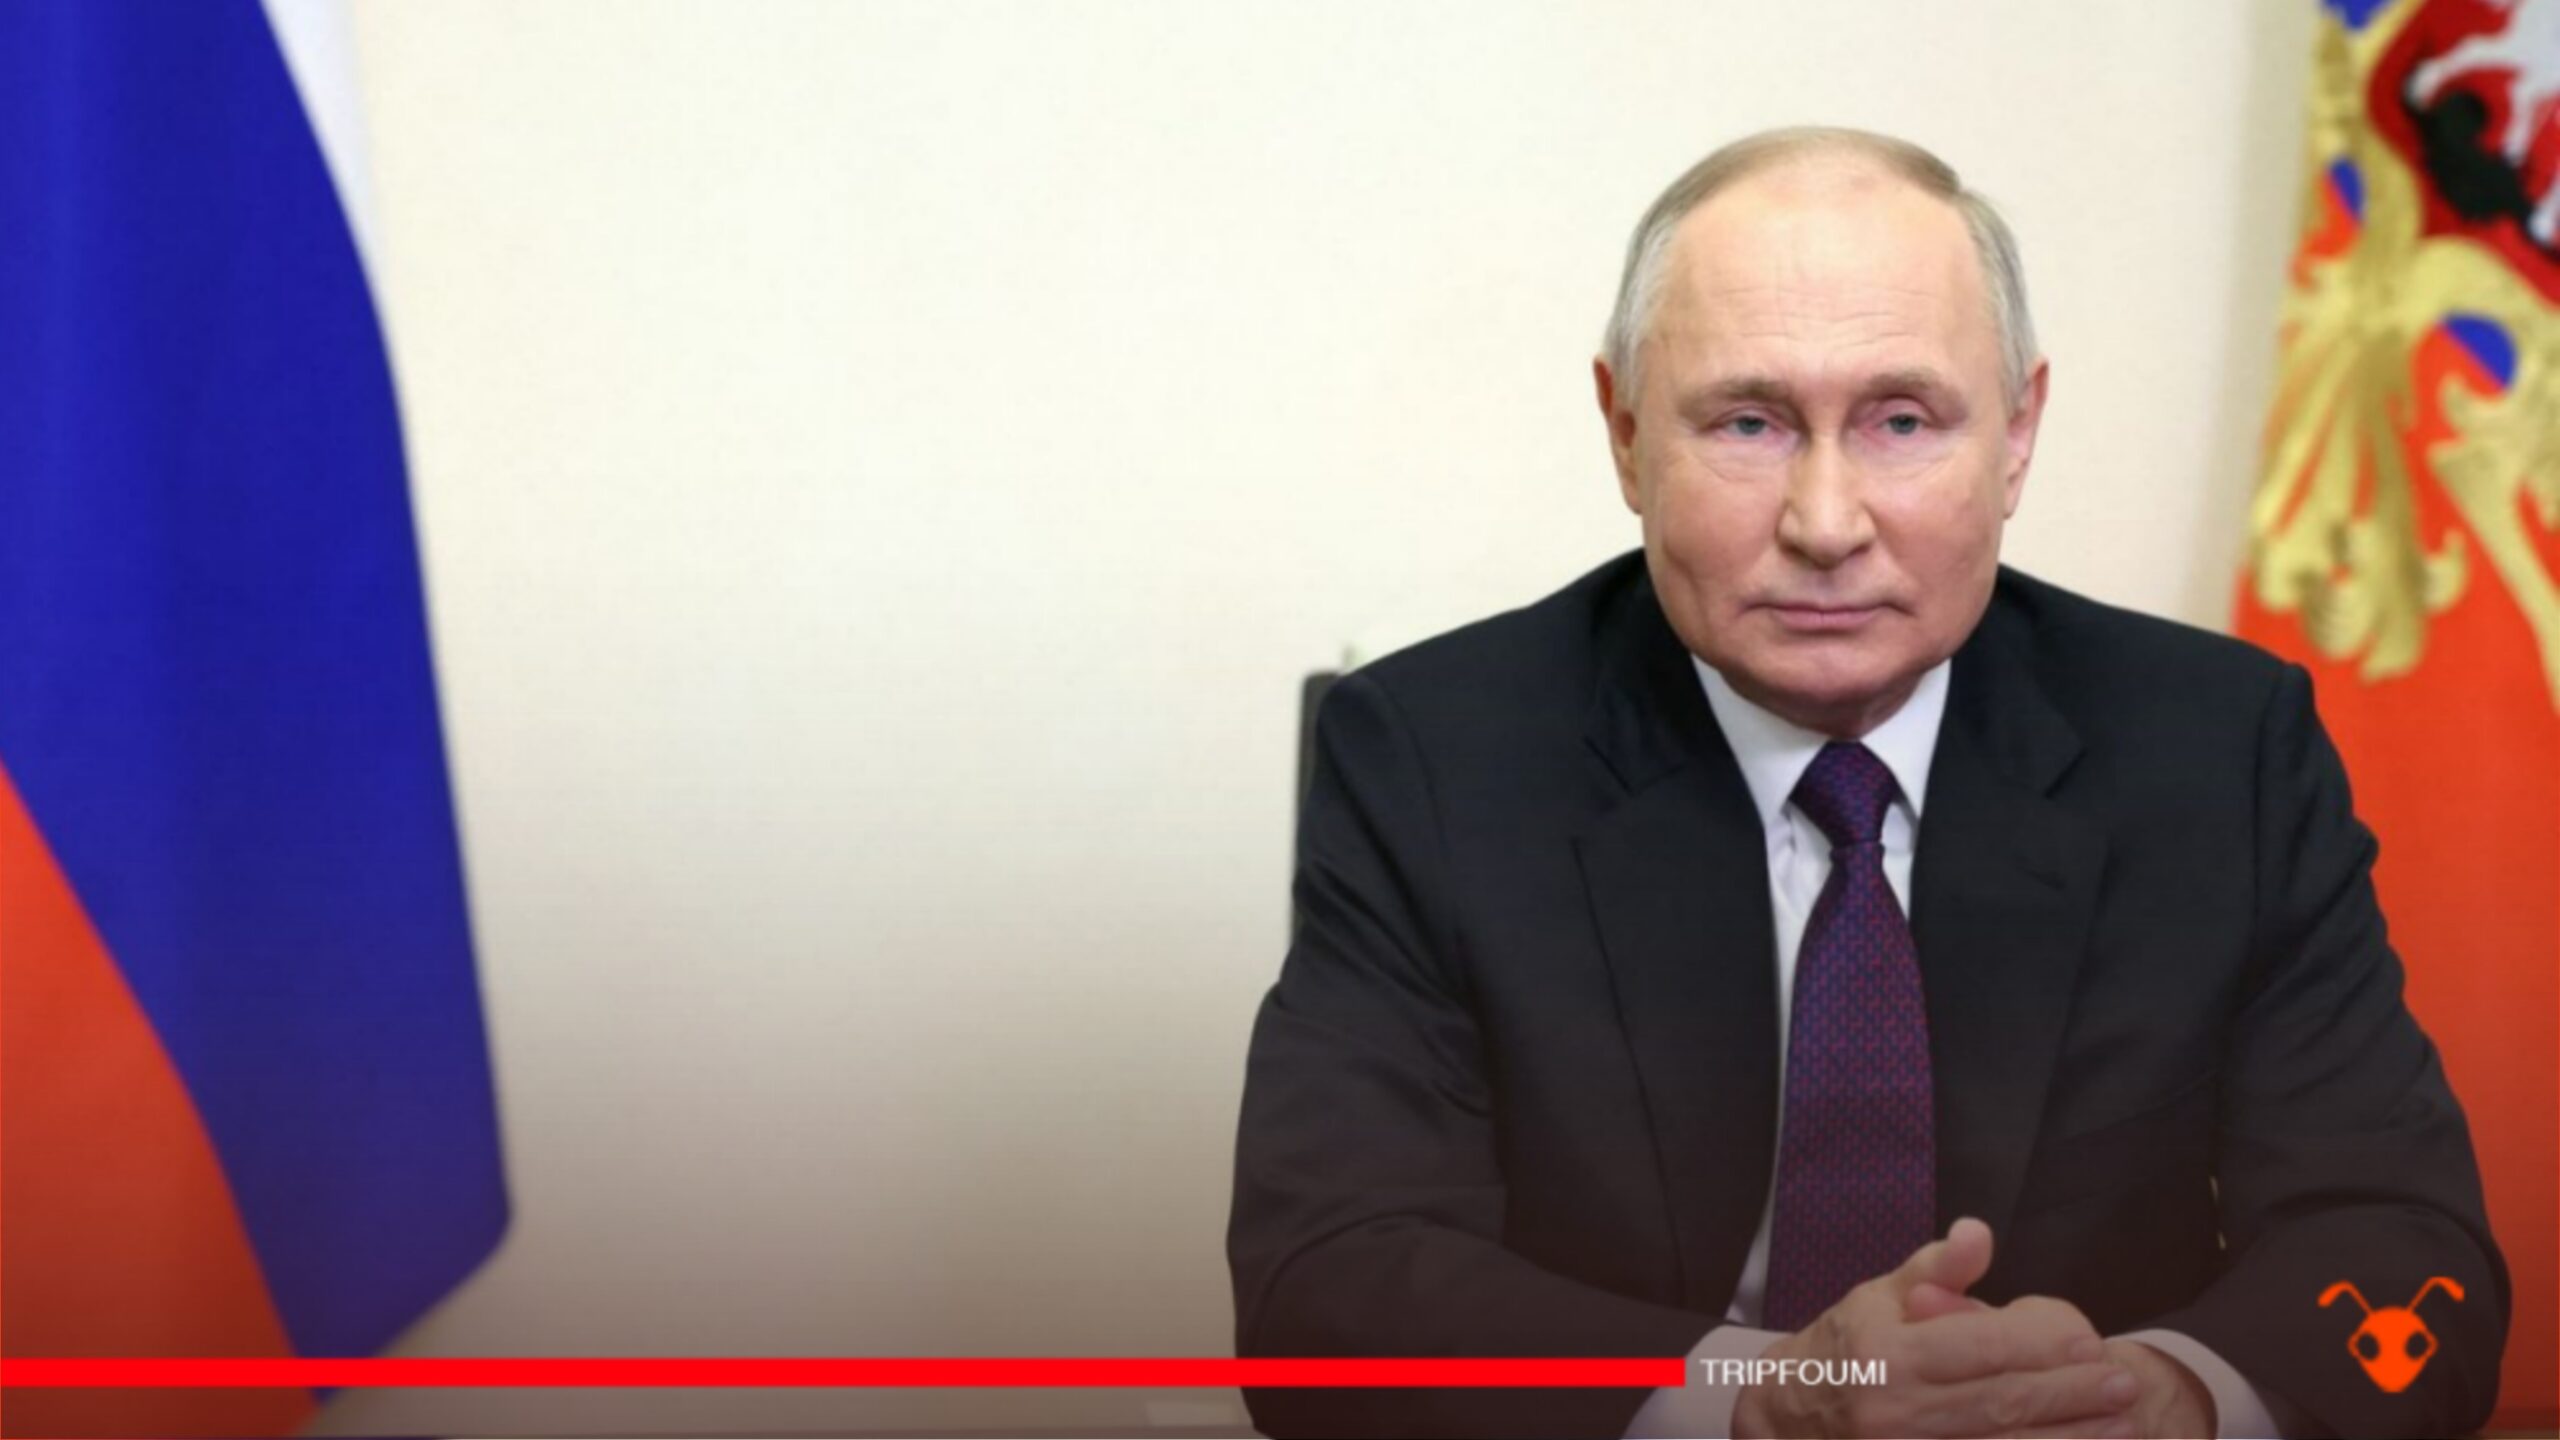 Vladimir Poutine réélu pour un 5e mandat en remportant 87 % des voix